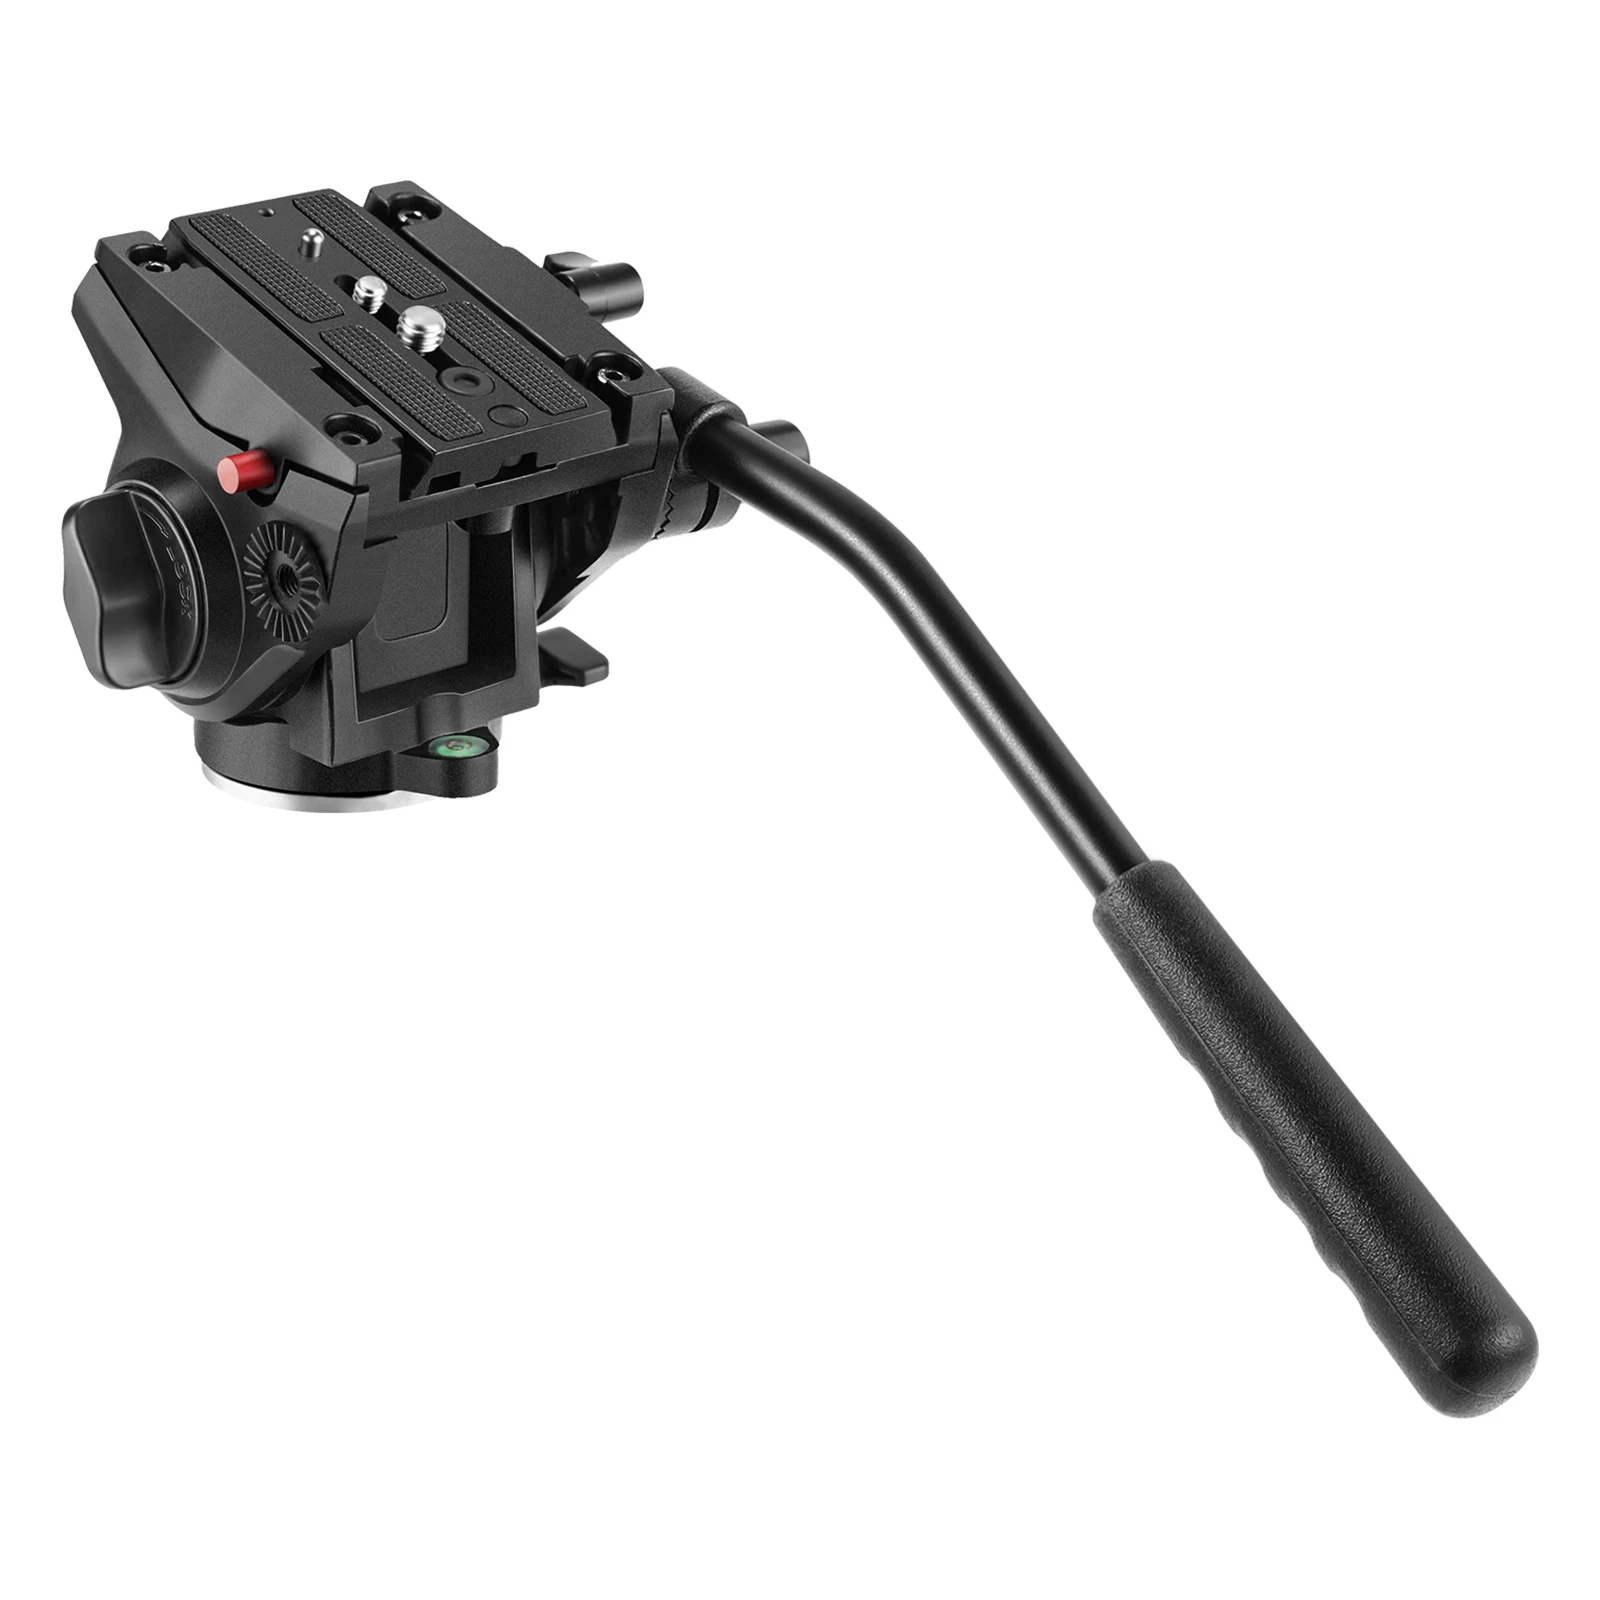 Neewer-حامل ثلاثي القوائم لكاميرا الفيديو شديد التحمل ولوحة انزلاقية بمسامير 1/4 و 3/8 بوصة لكاميرات DSLR